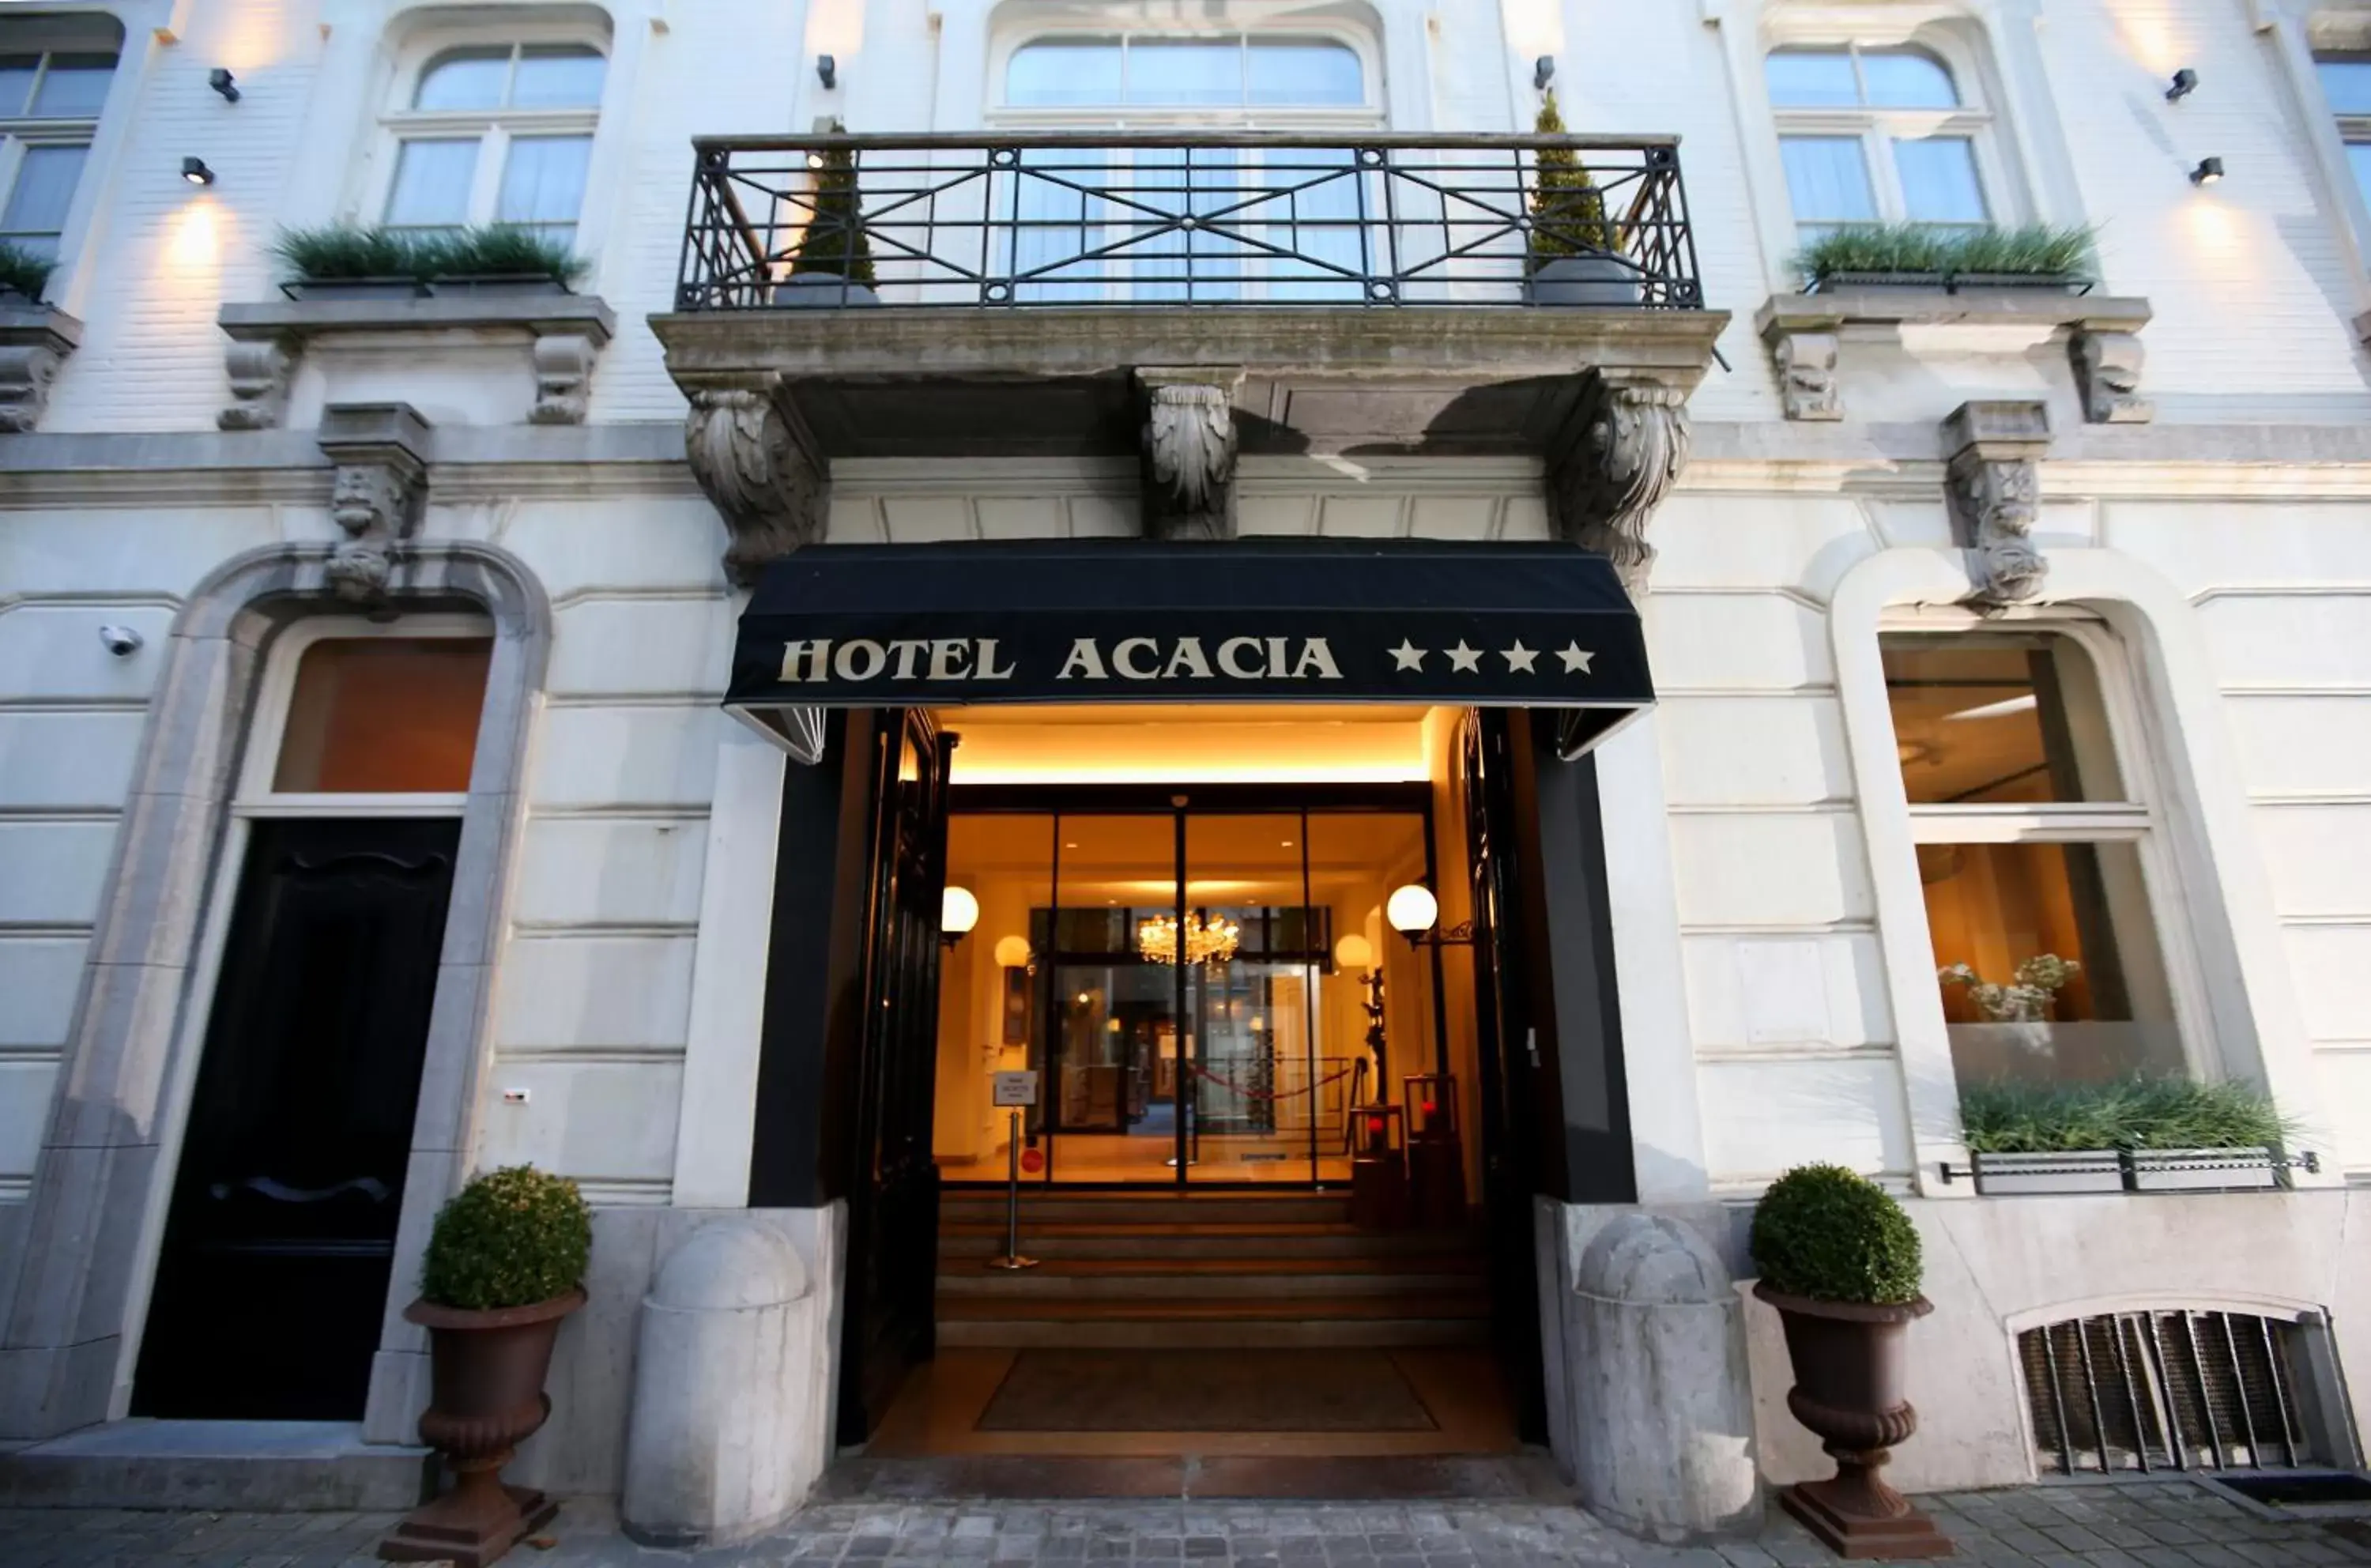 Facade/entrance in Hotel Acacia